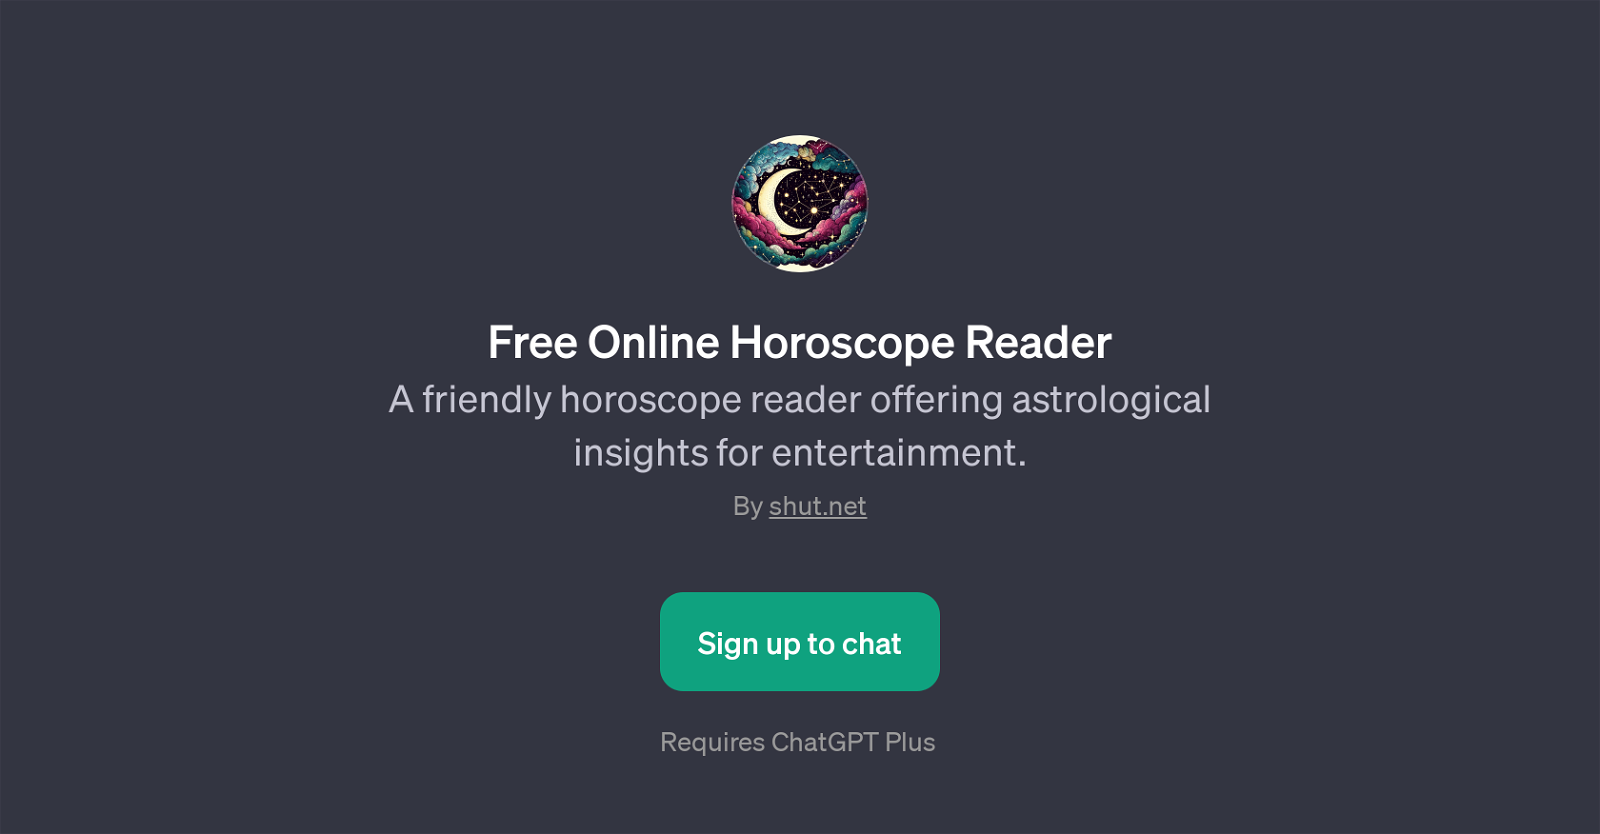 Free Online Horoscope Reader website